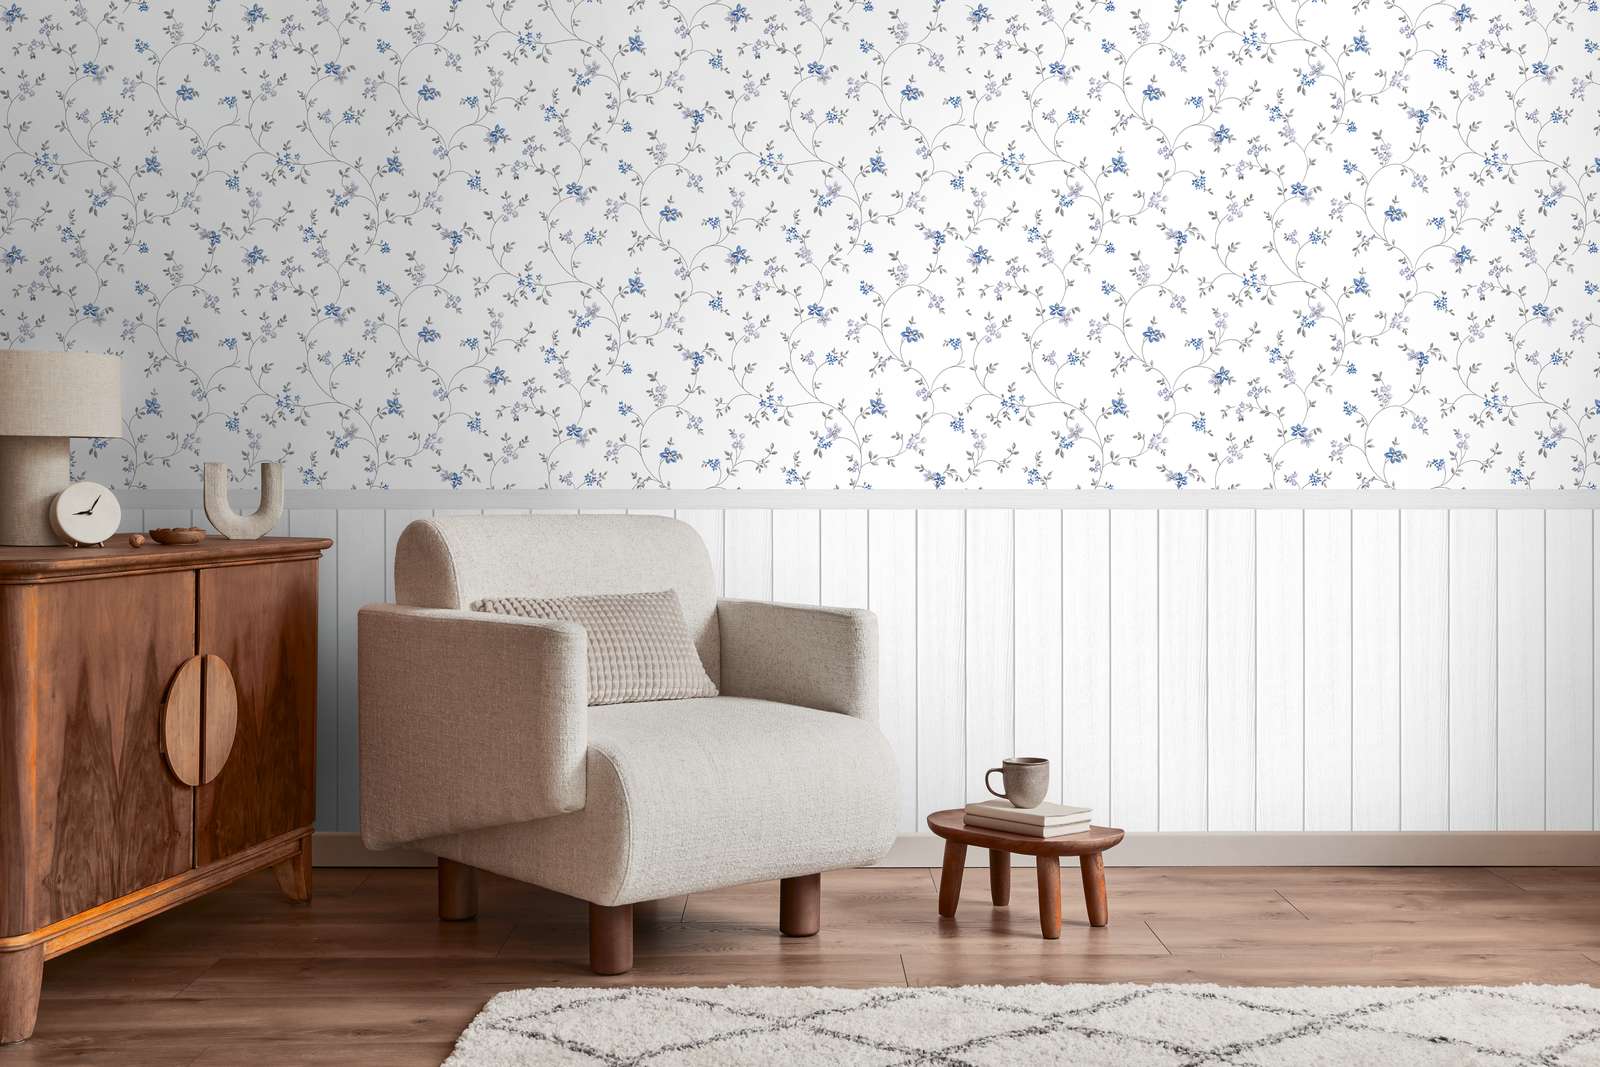             Papel pintado motivo no tejido con cenefa de zócalo efecto madera y motivo floral - blanco, gris, azul
        